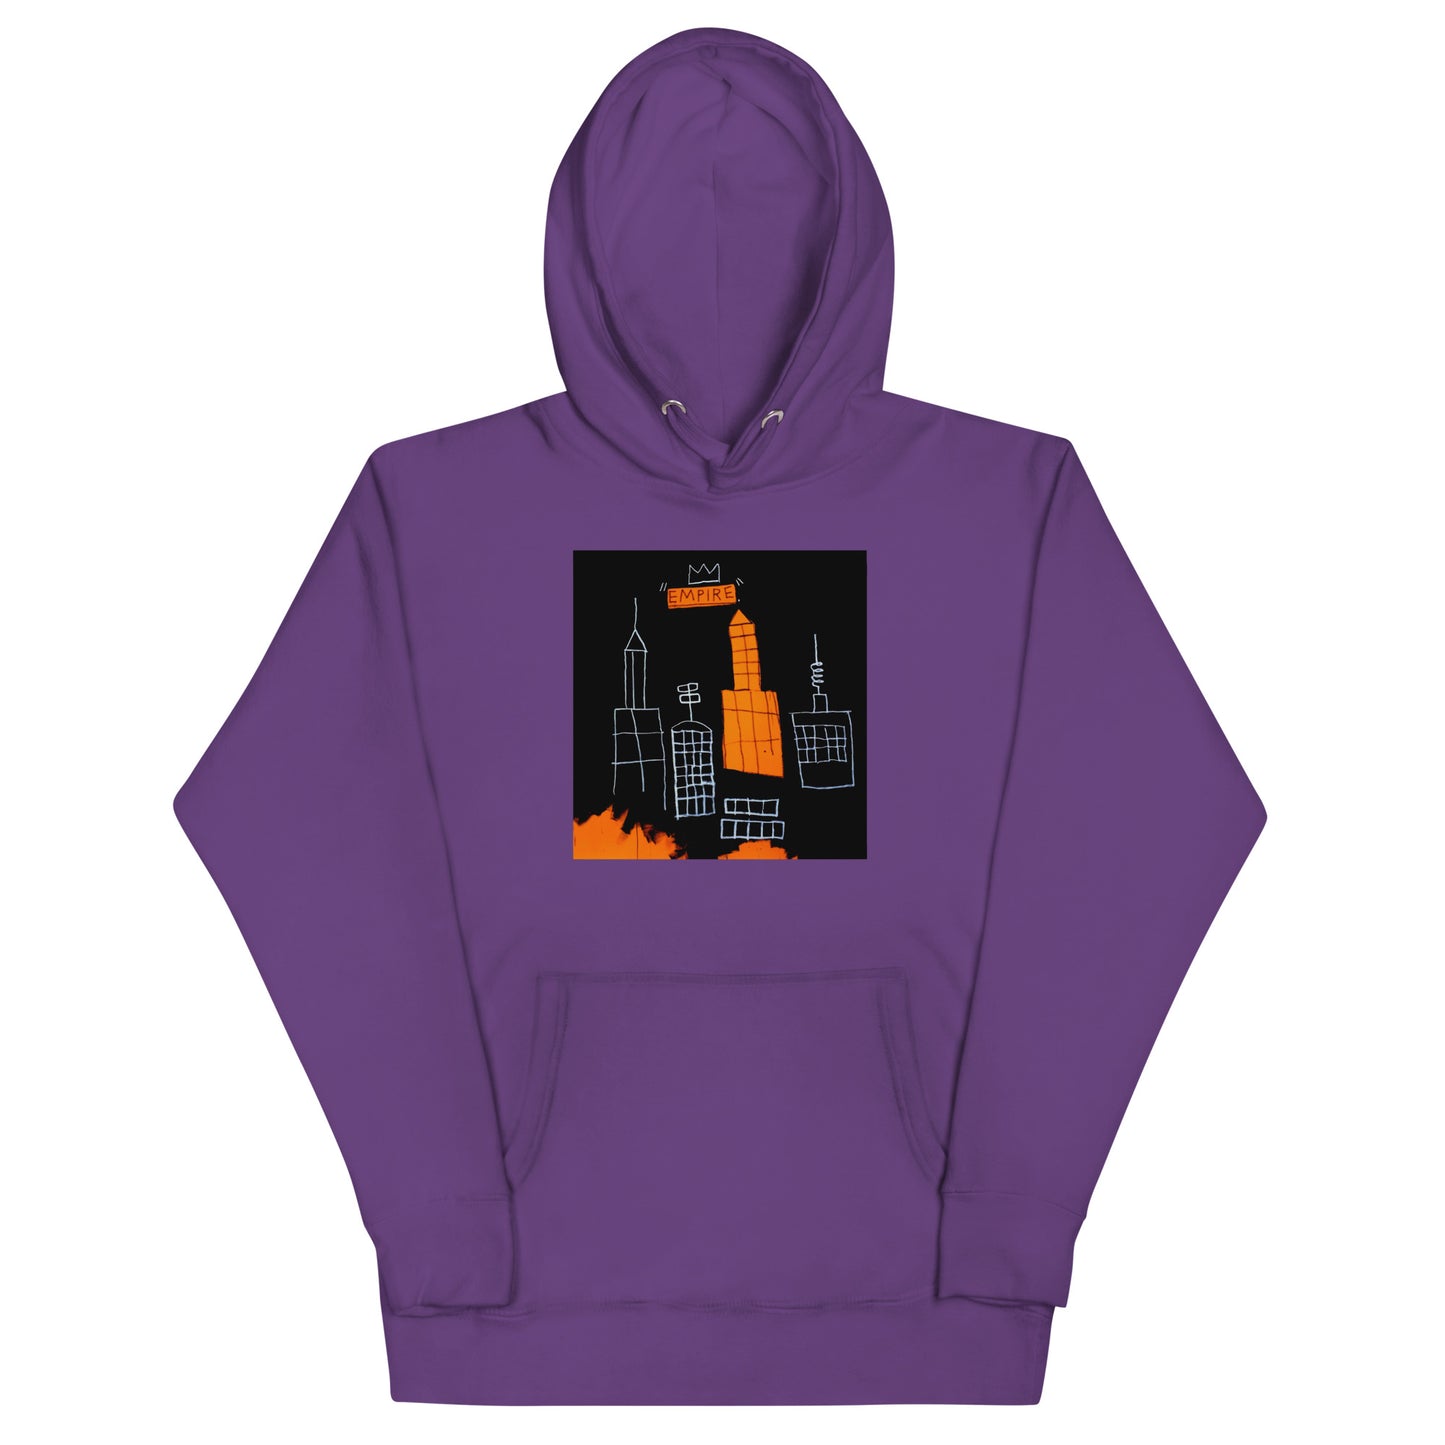 Jean-Michel Basquiat "Mecca" Artwork Printed Premium Streetwear Sweatshirt Hoodie Purple